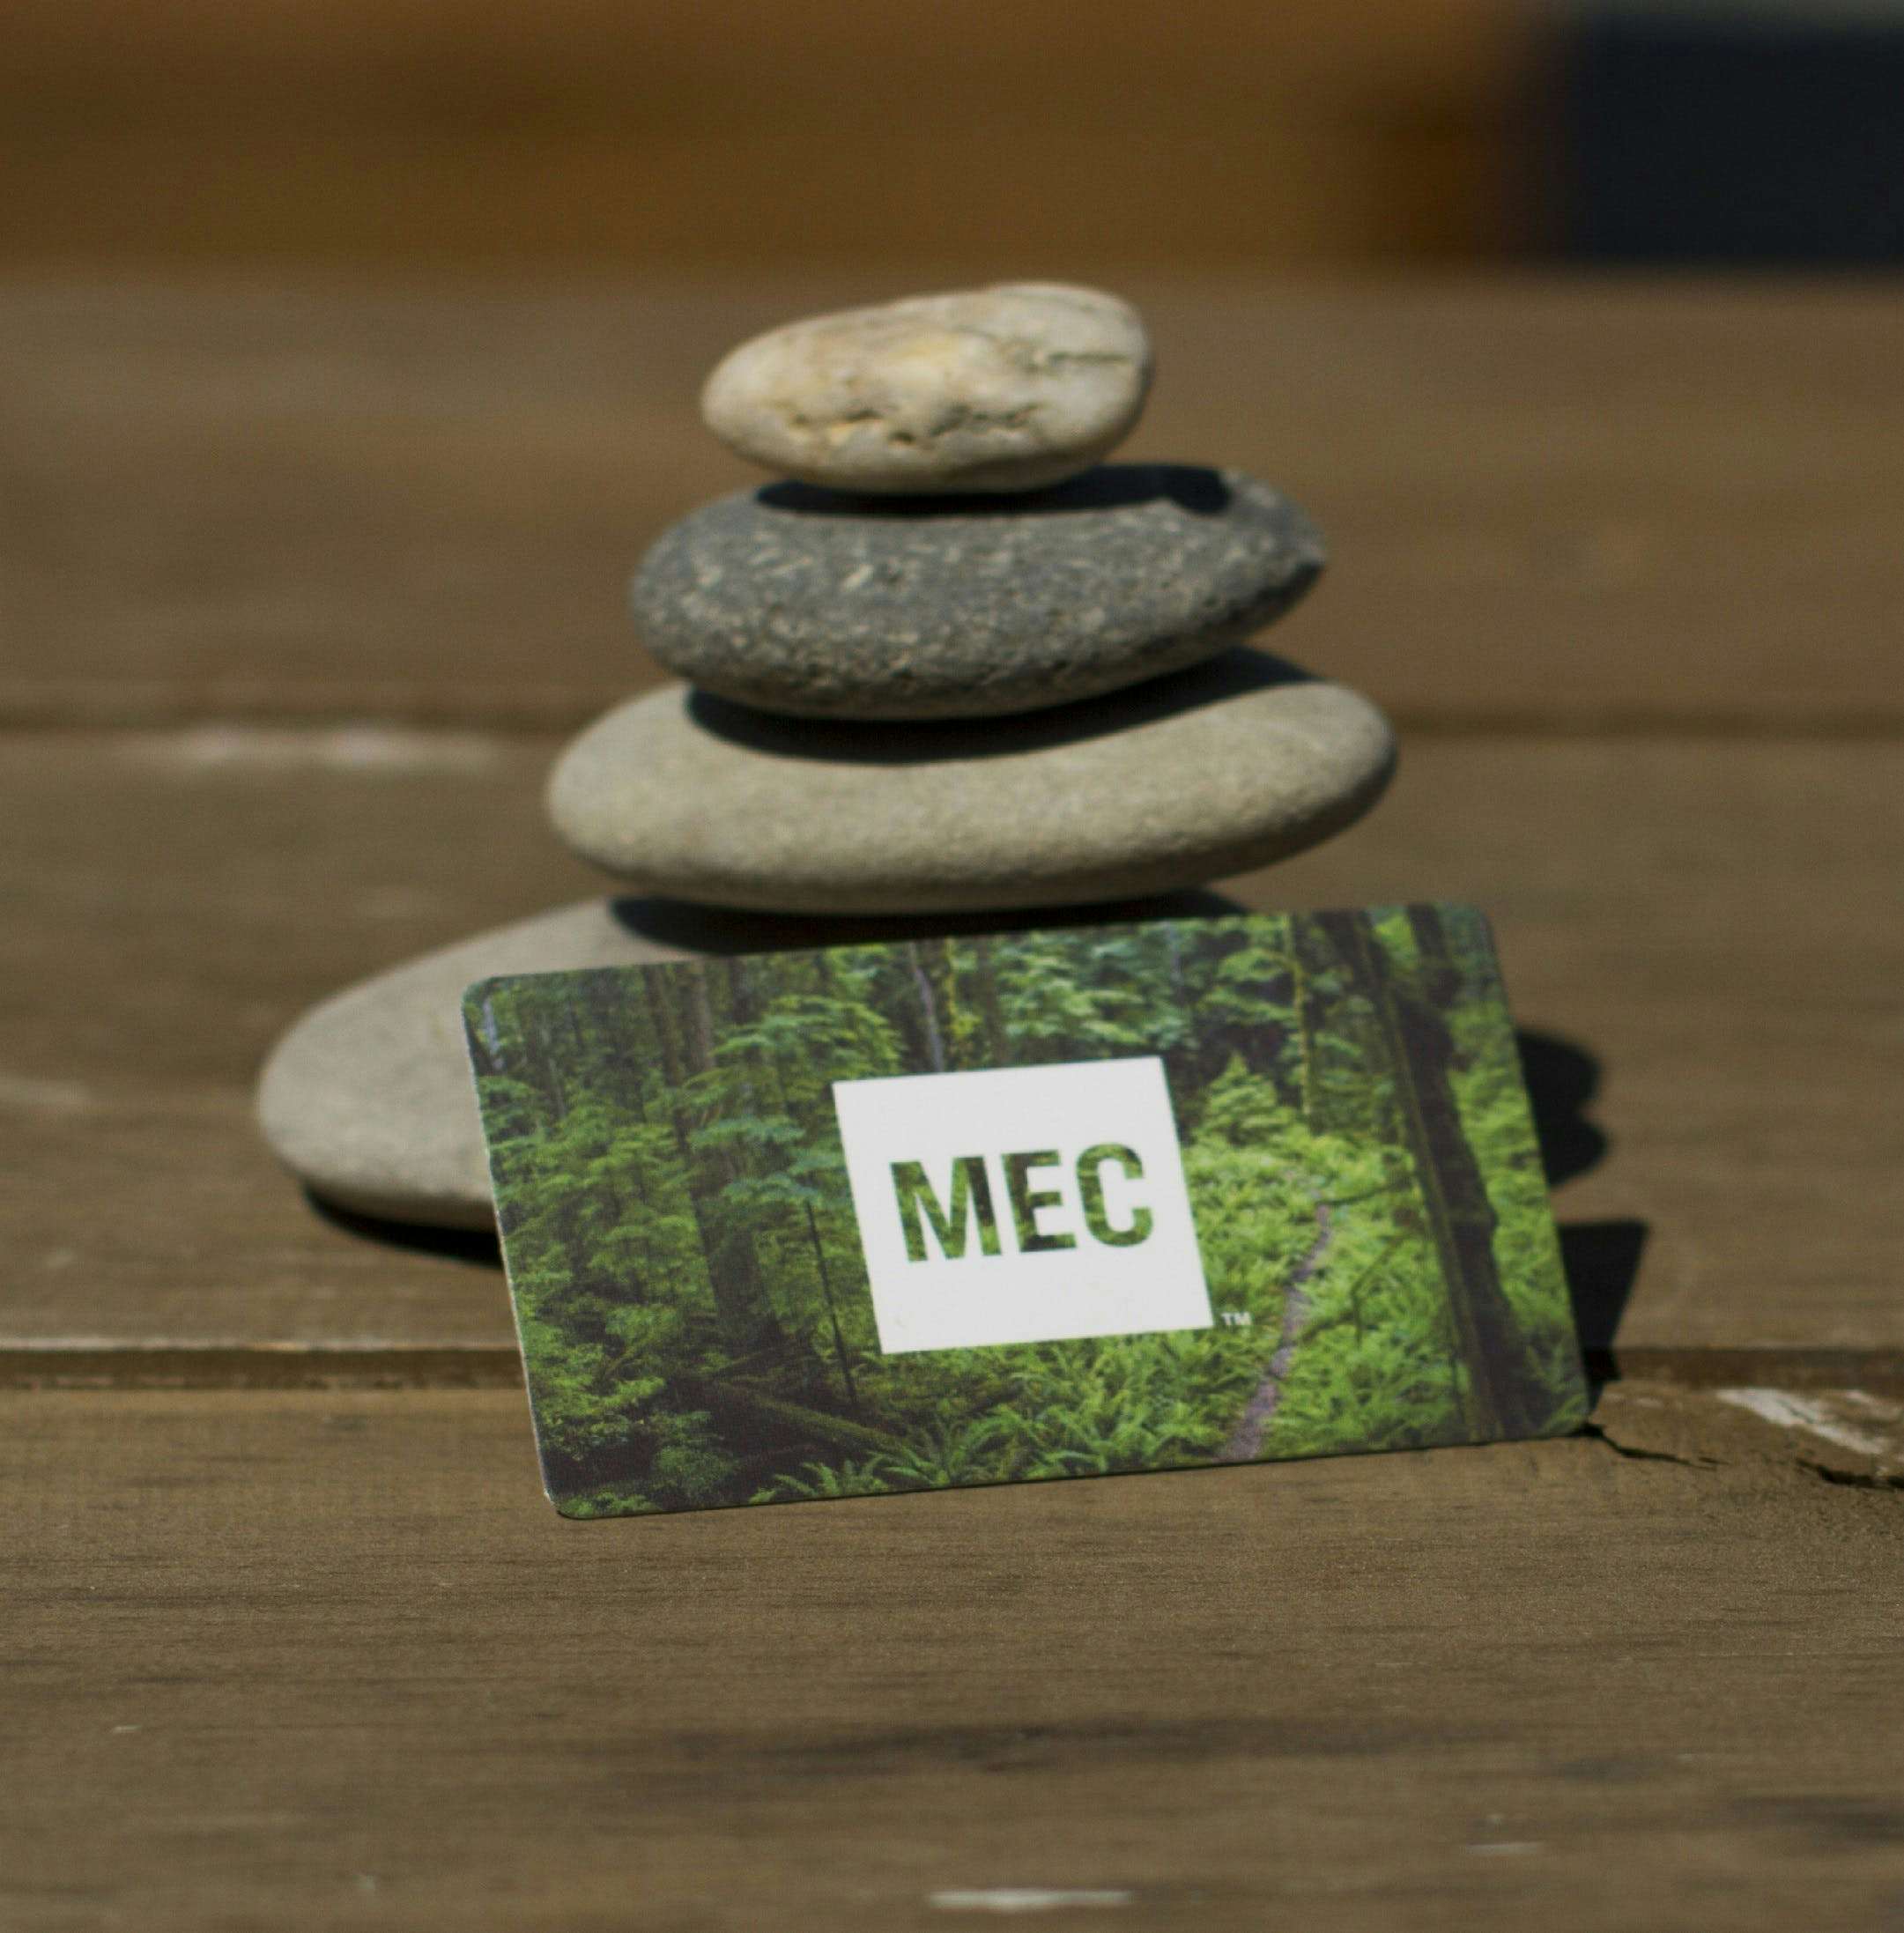 MEC logo on gift card leaning against stones